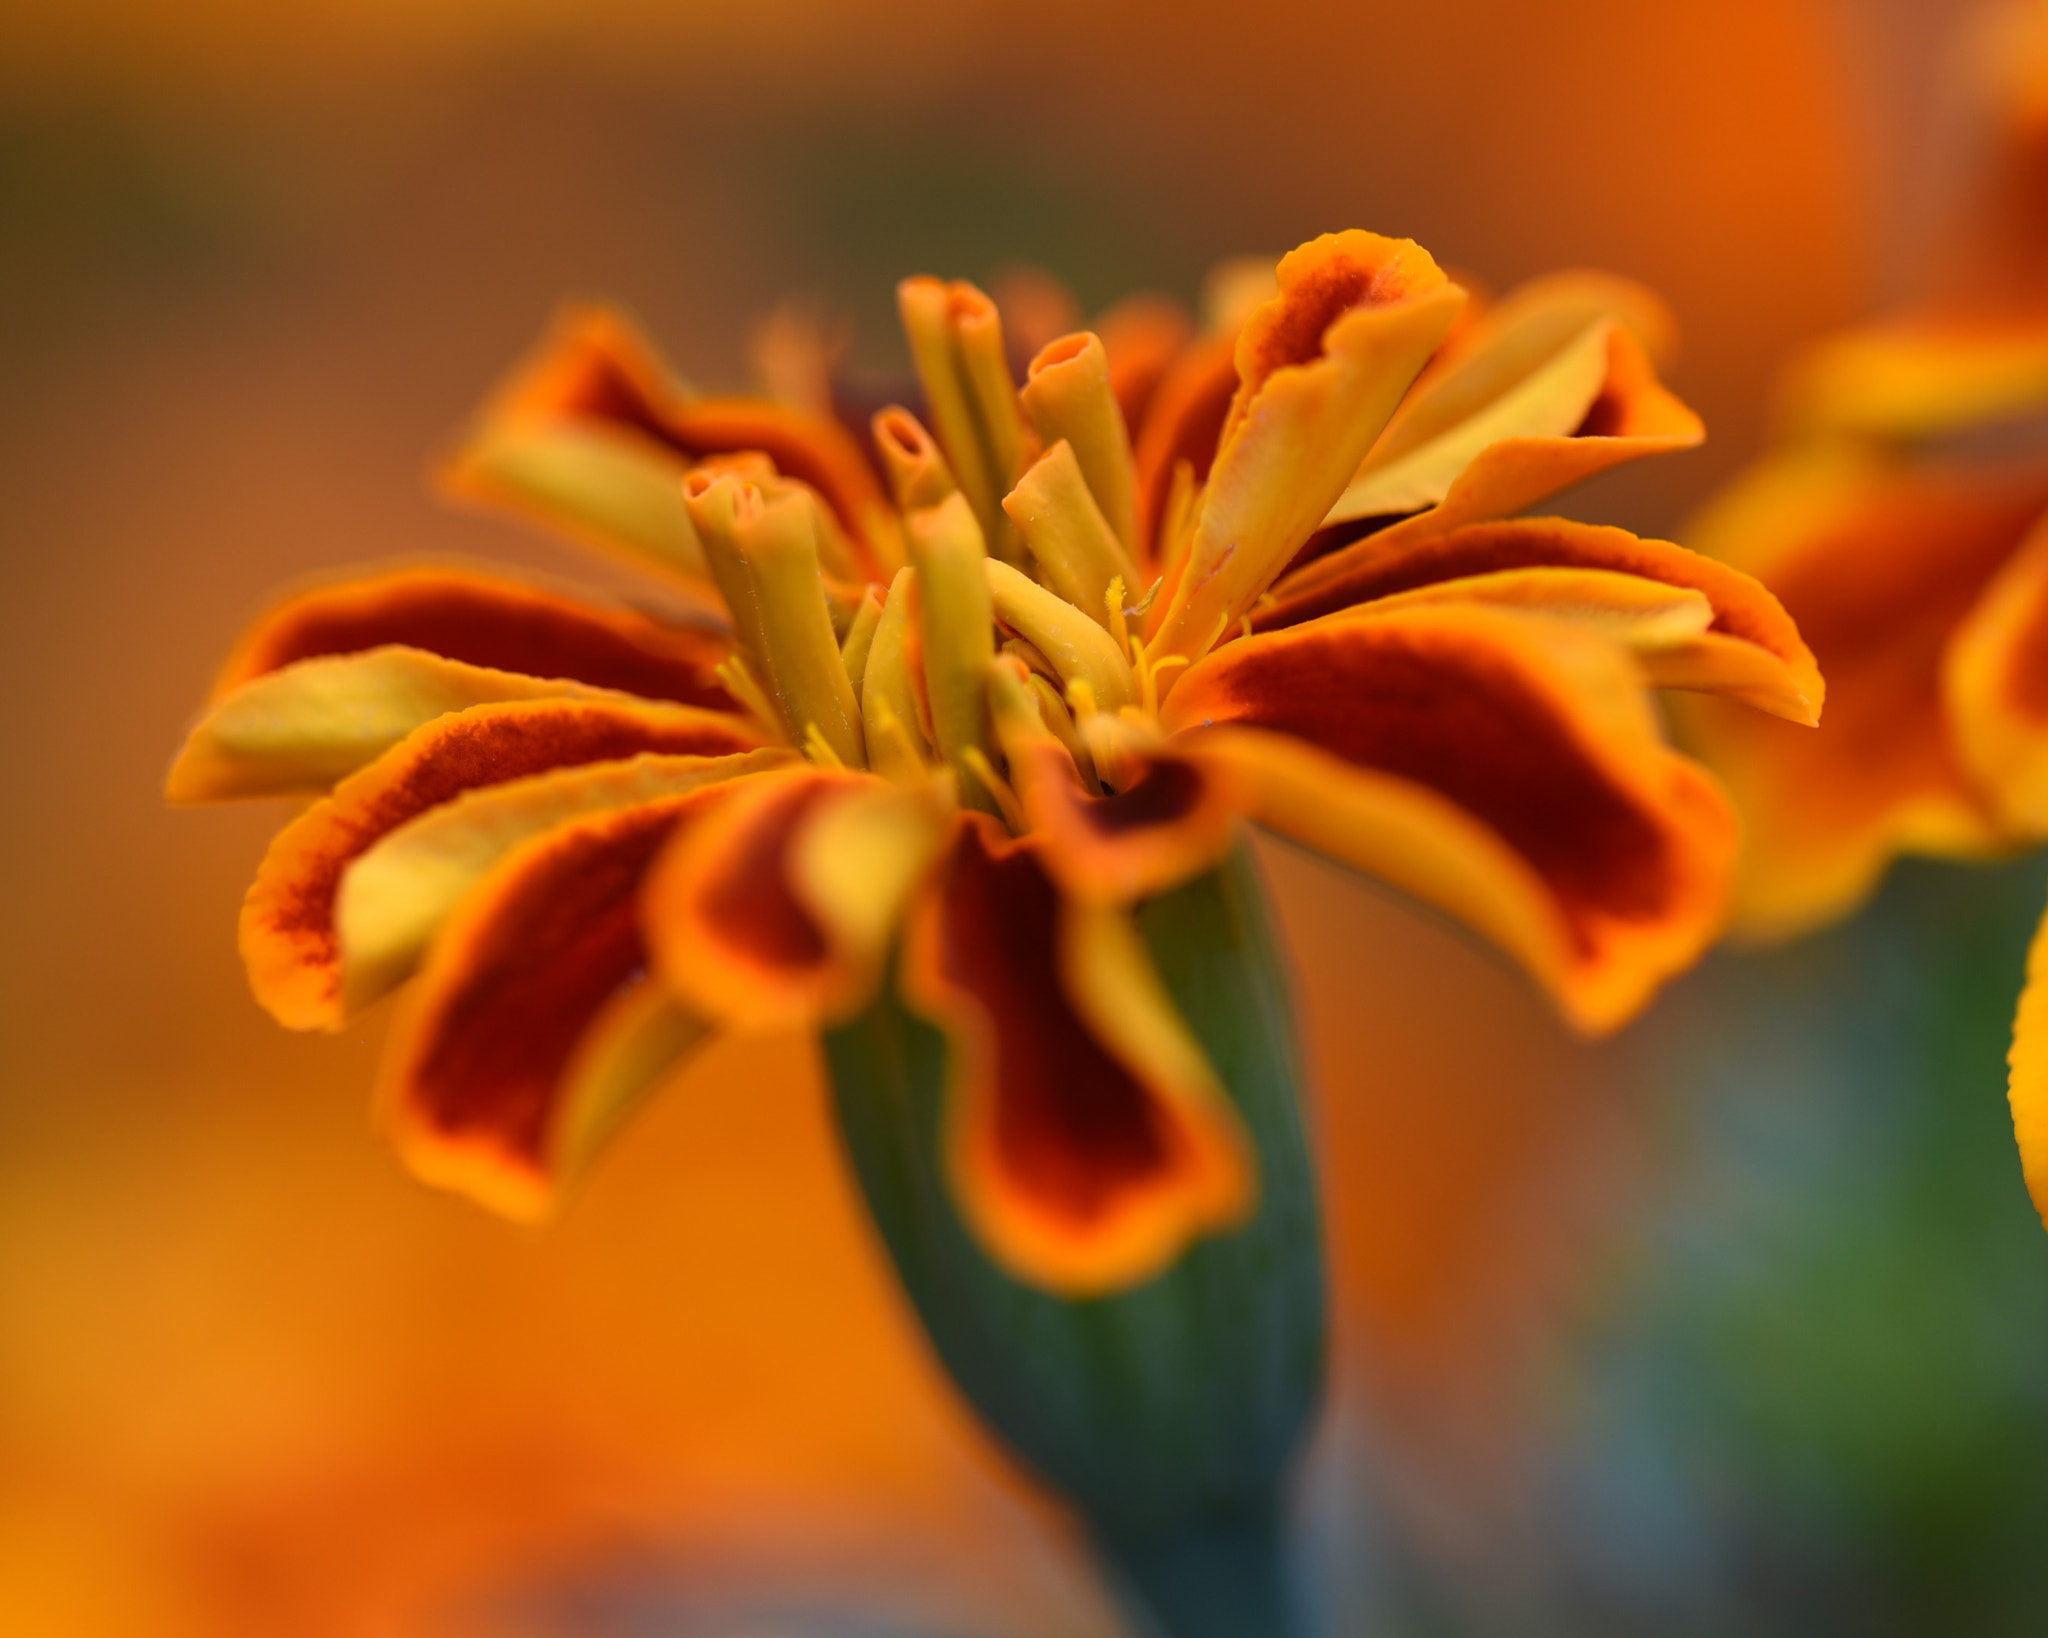 Nikon AF Micro-Nikkor 200mm F4D ED-IF sample photo. Orange colour flower photography